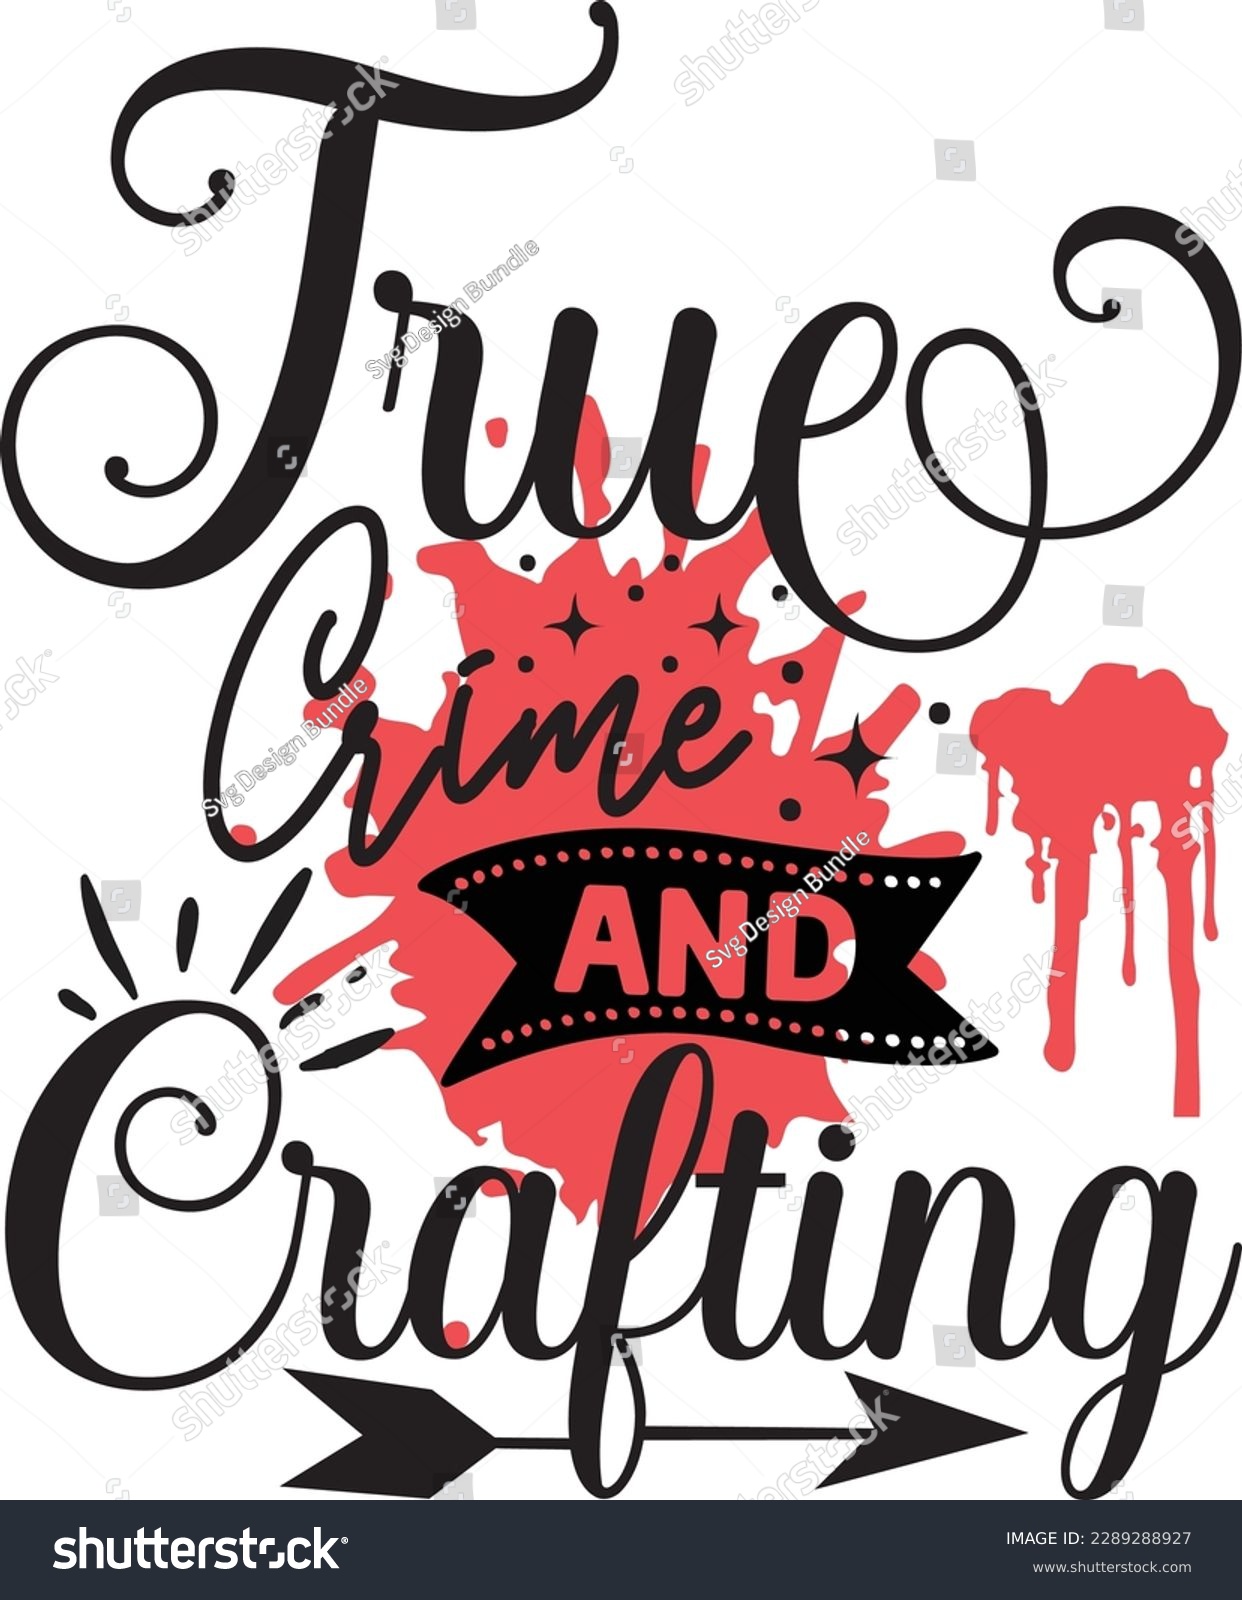 SVG of True Crime and Crafting svg ,Crime svg Design, Crime svg bundle svg